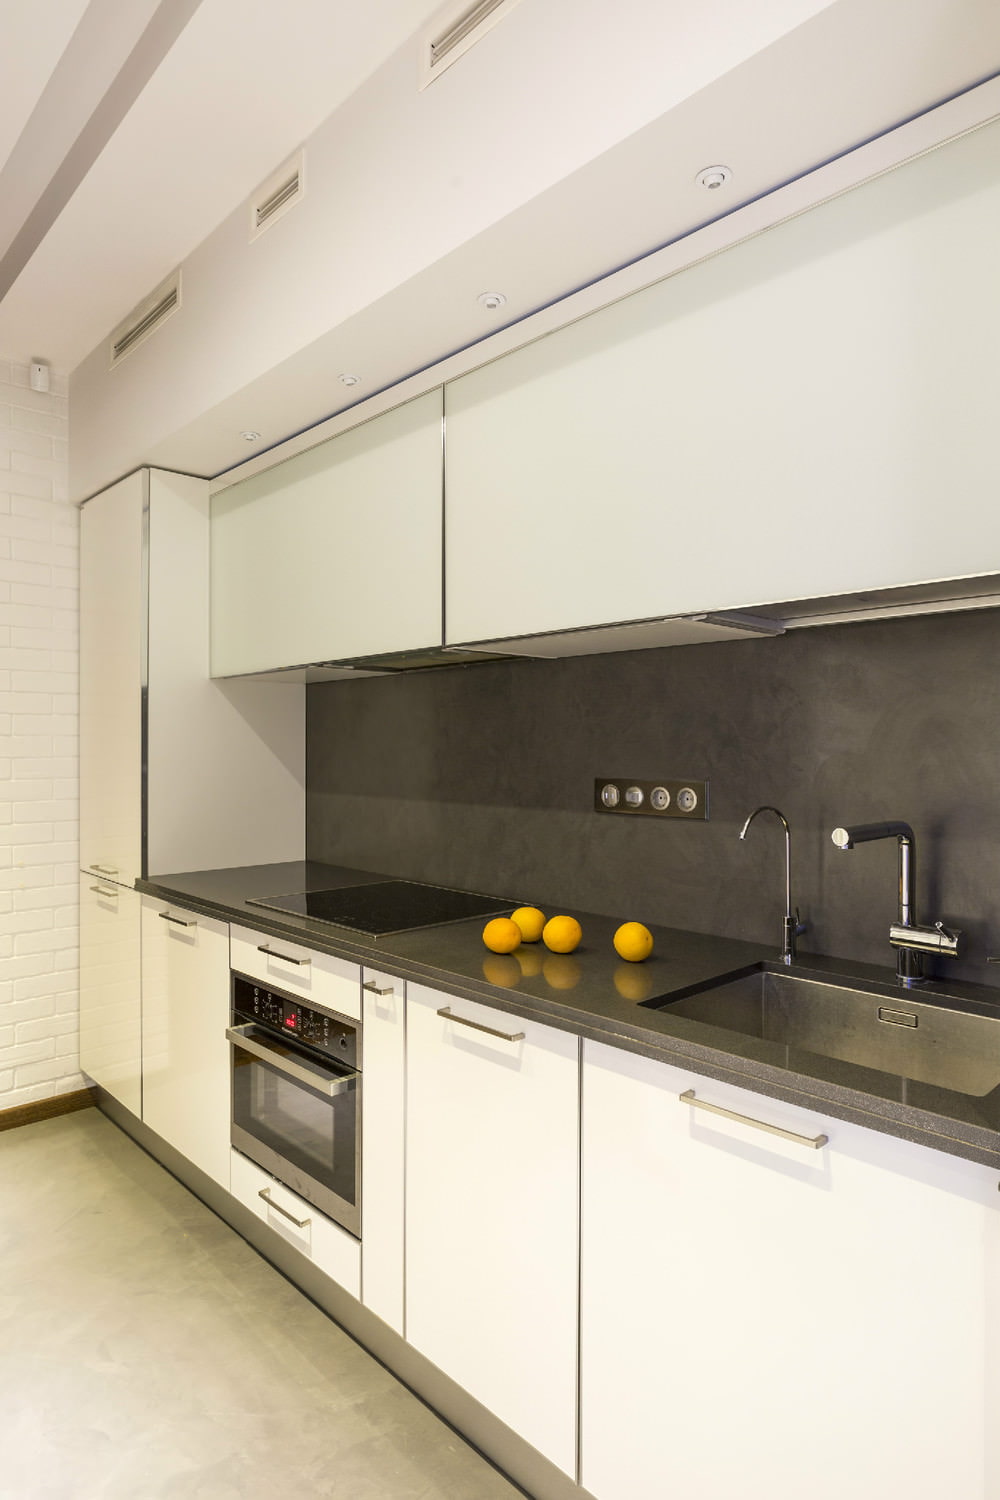 ห้องครัวในการออกแบบอพาร์ทเมนต์สองห้องขนาด 43 ตร.ม. เมตร